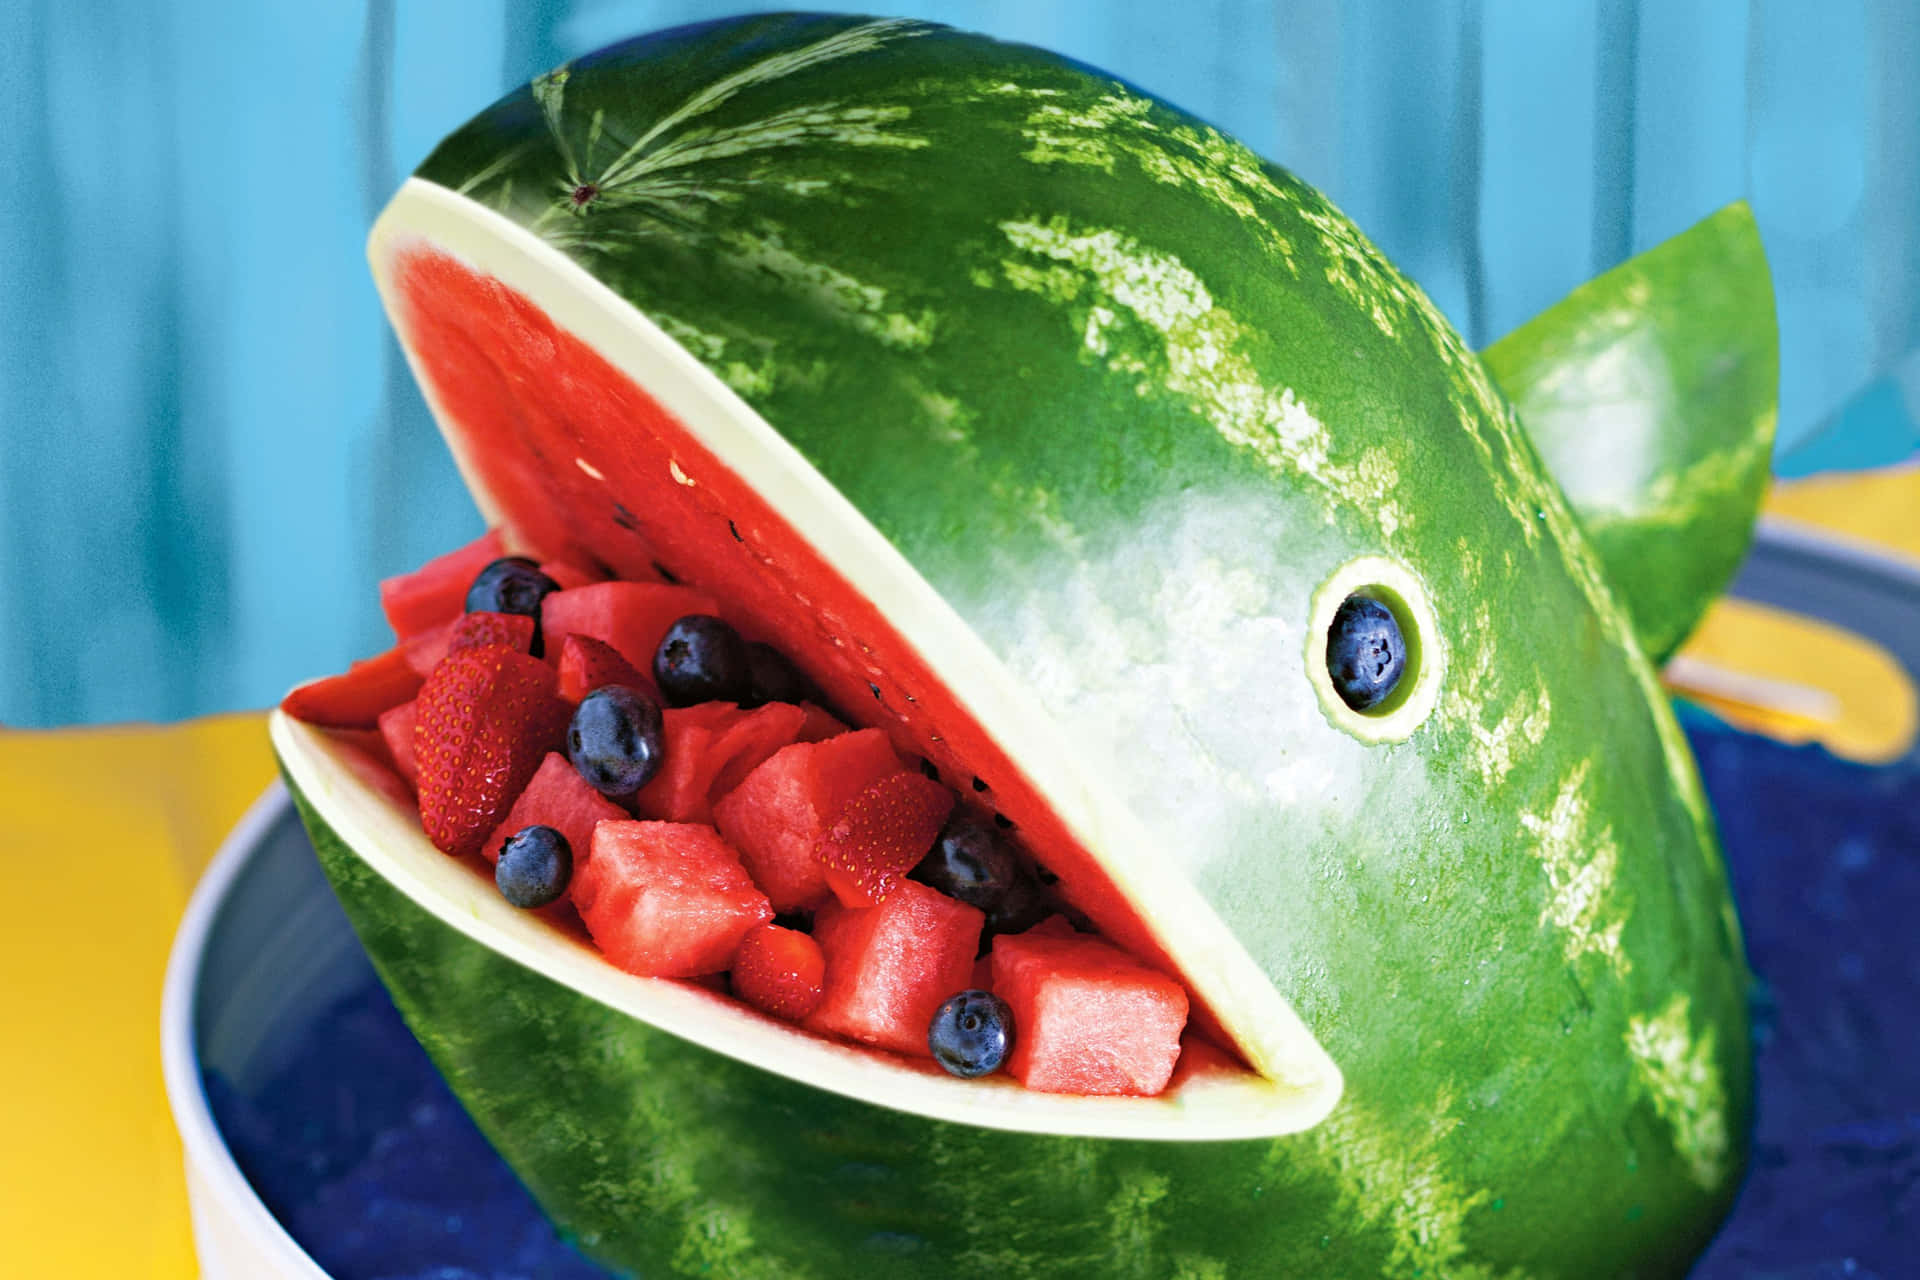 Enjoying a fresh watermelon on a summer day